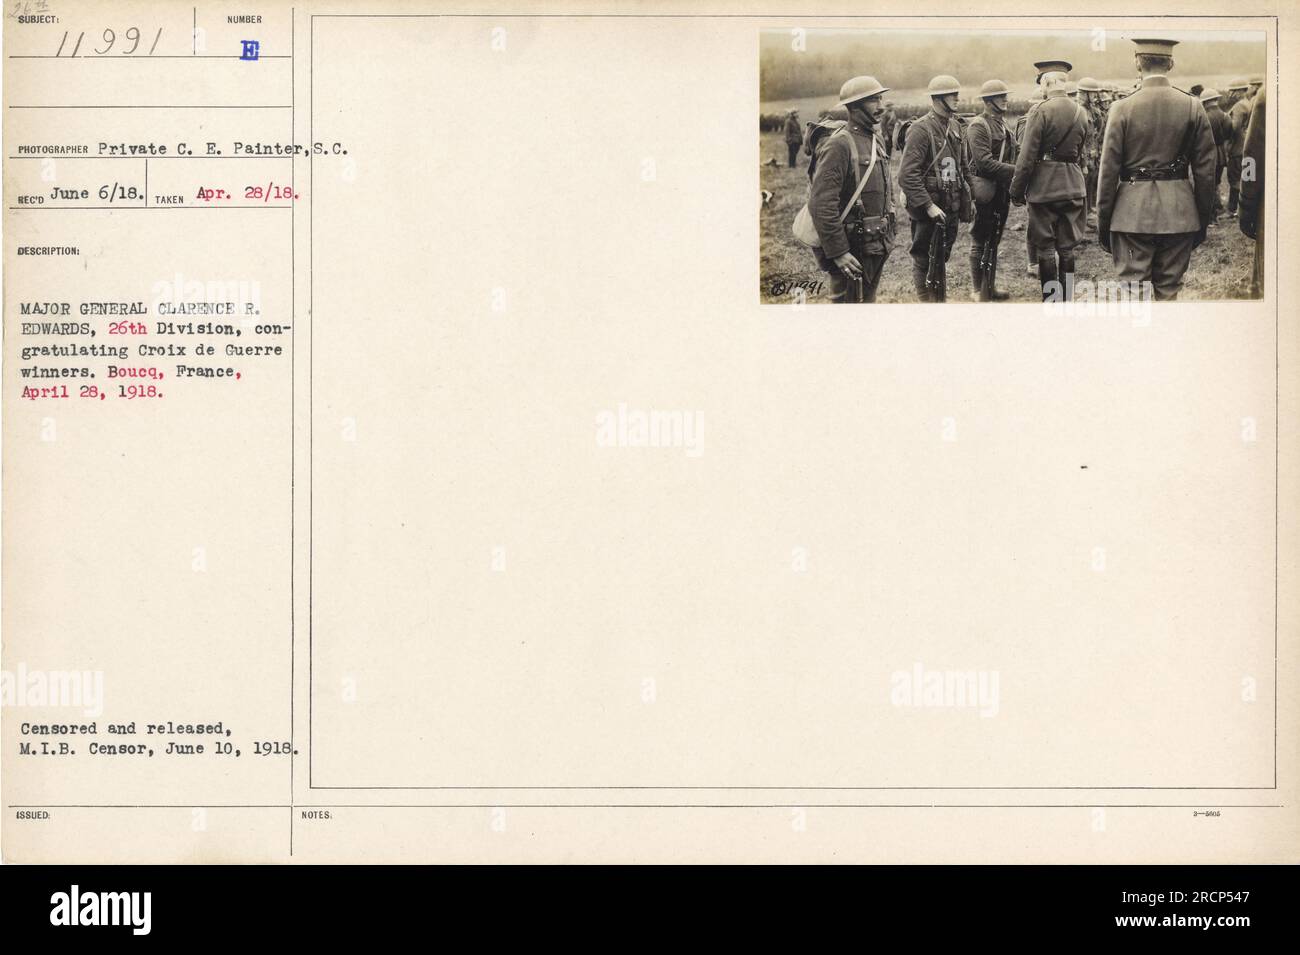 Eine Gruppe amerikanischer Soldaten der 26. Division wird von Major General Clarence R. Edwards gratuliert. Die Veranstaltung fand am 28. April 1918 in Boucq, Frankreich, statt. Das Foto wurde vom Gefreiten C. E. Maler aufgenommen und zensiert und vom M.I.B. freigelassen Zensor am 10. Juni 1918. Beschreibung Nummer: 1199. Stockfoto